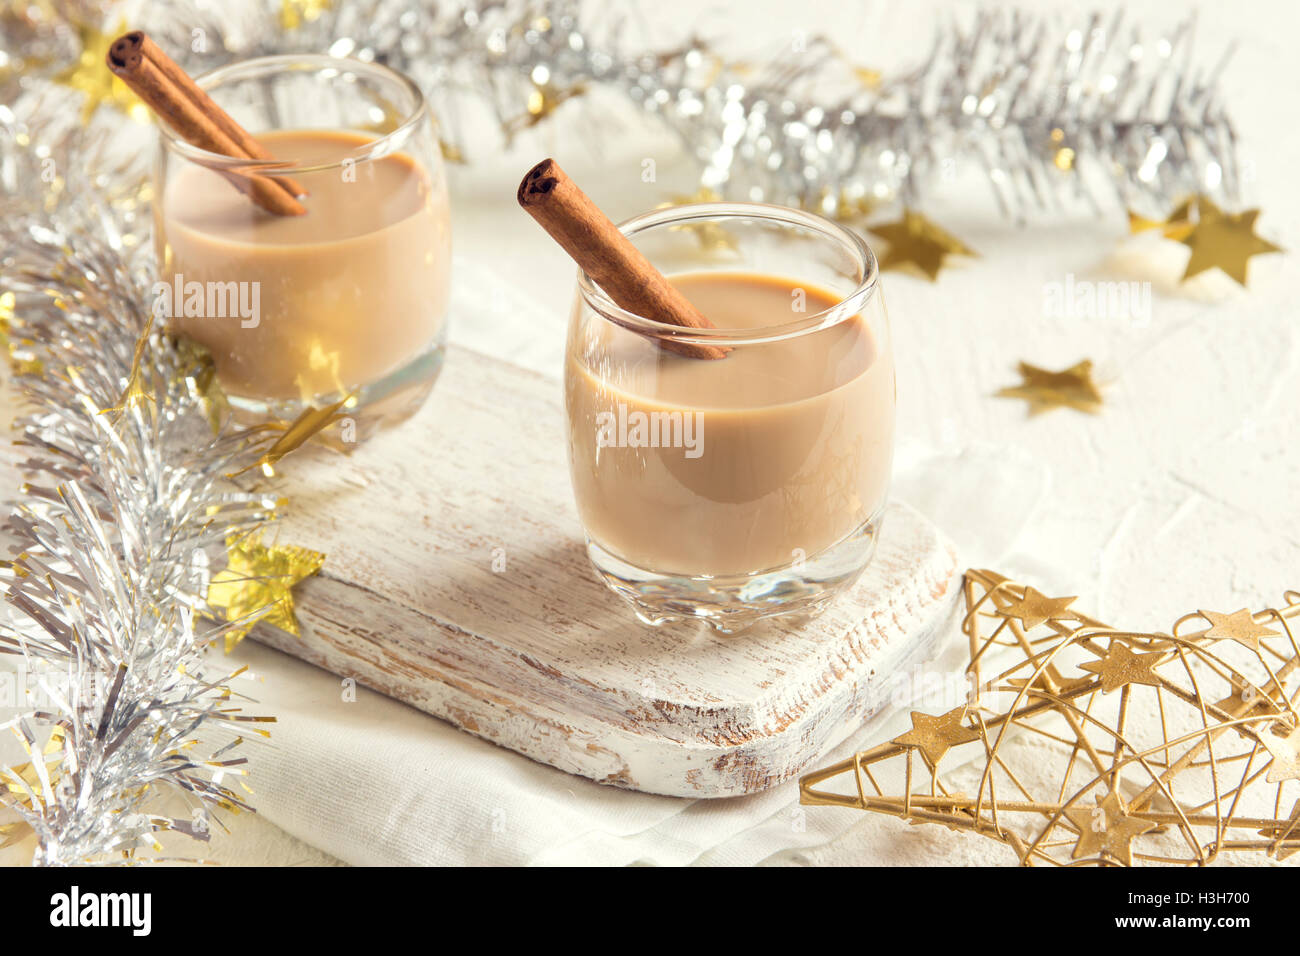 Noël : lait de poule à la cannelle dans des verres avec des ornements d'or - boisson festive traditionnelle faite maison pour le temps de Noël Banque D'Images